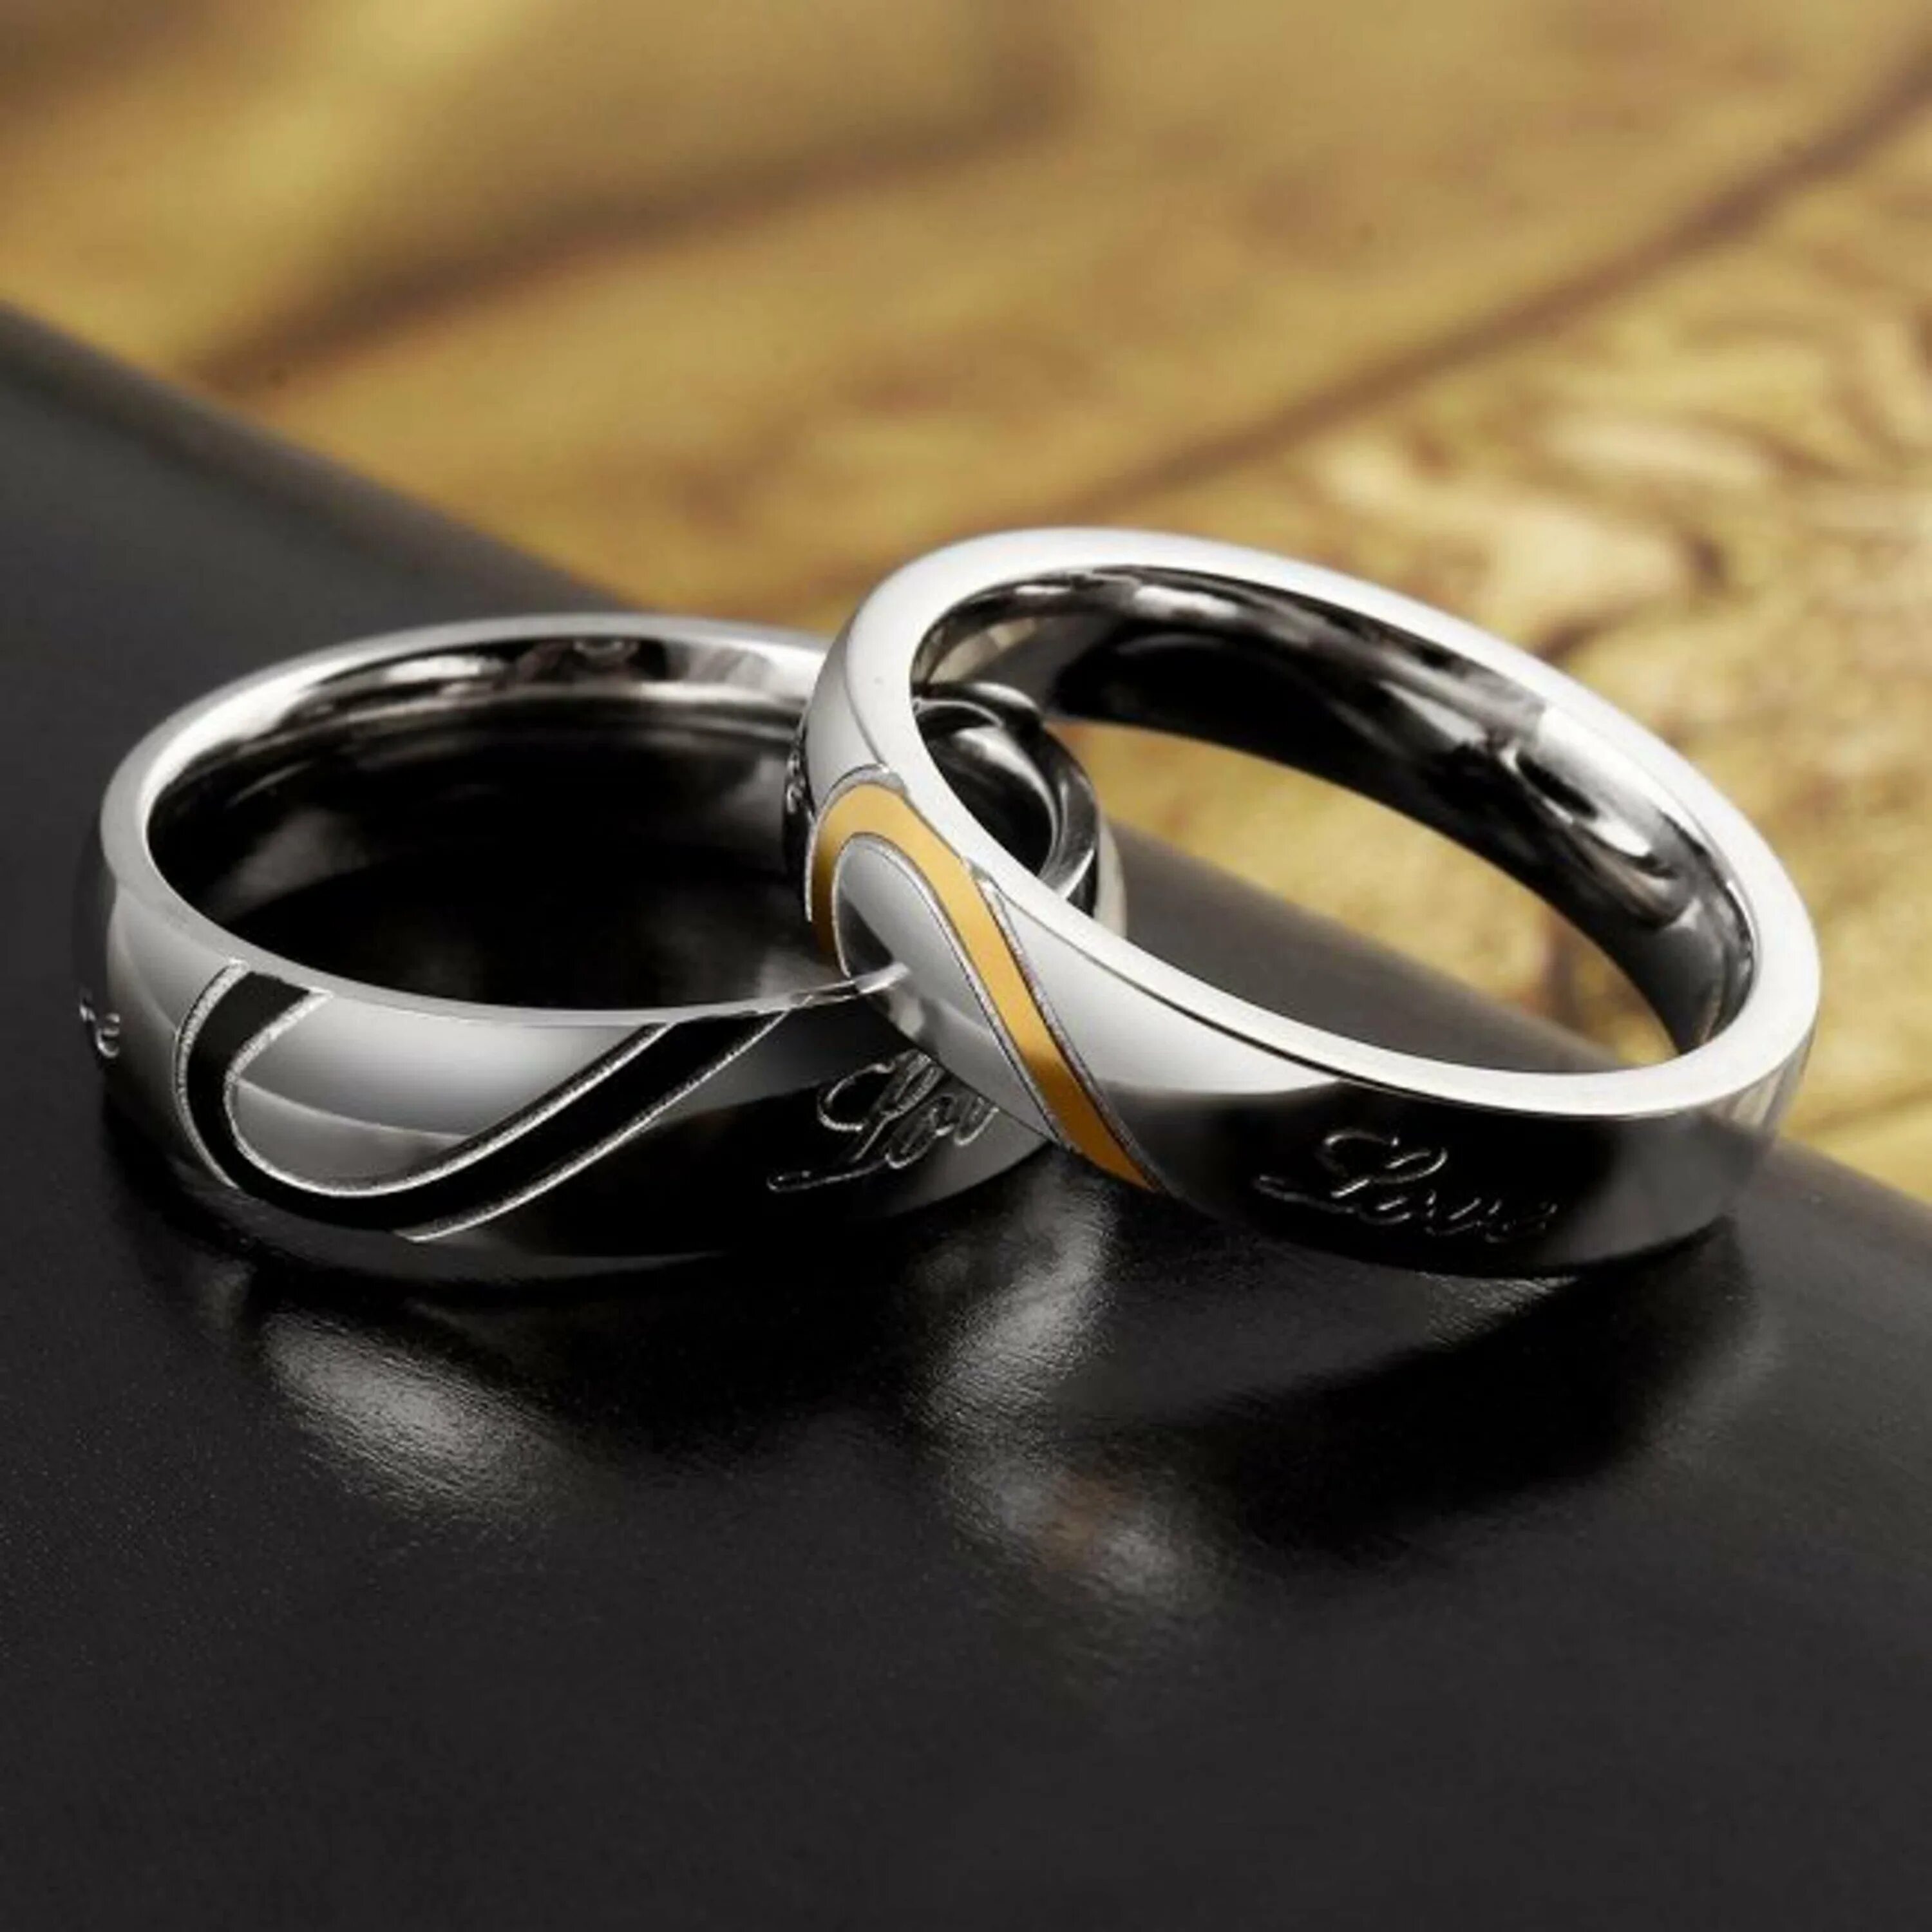 Парные кольца АЛИЭКСПРЕСС. Кольца для влюбленных. Необычные обручальные кольца. Свадебные кольца парные. Фото парных колец